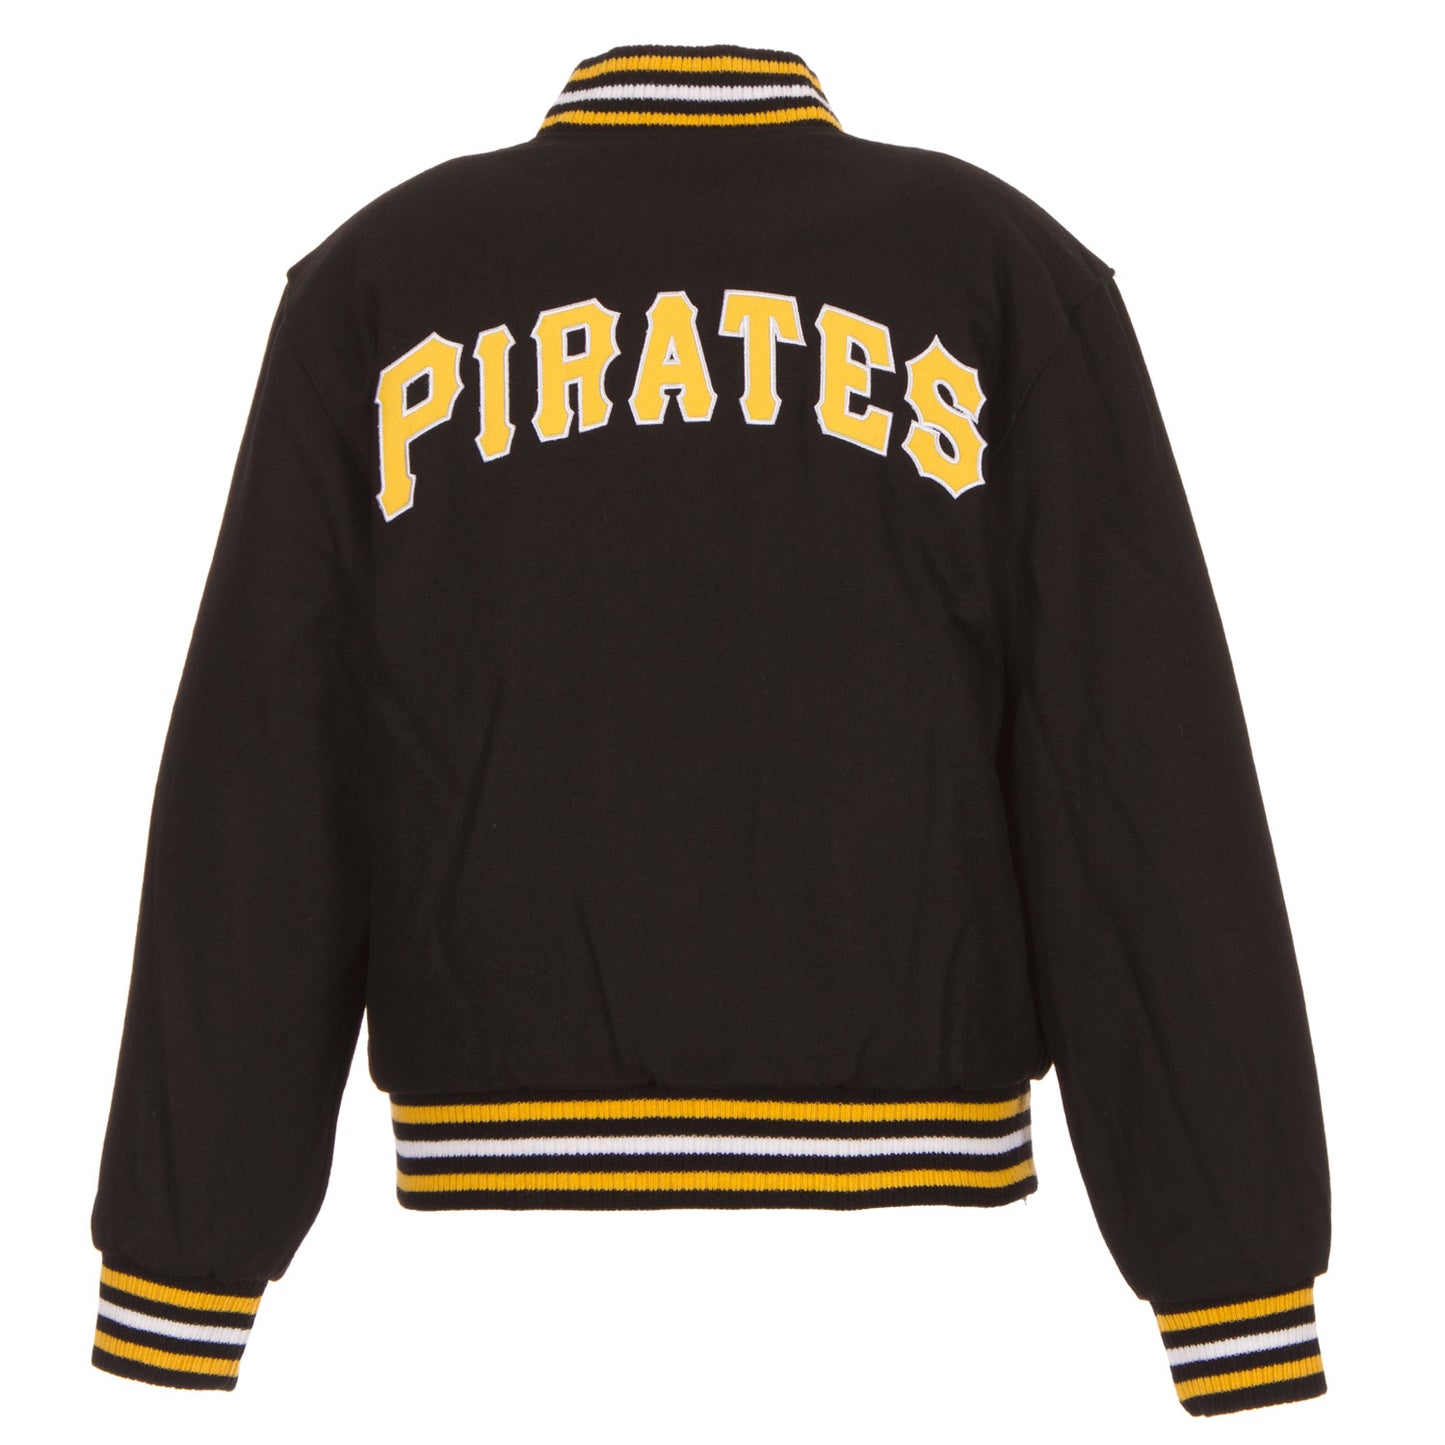 Pittsburgh Pirates Kid's Reversible Wool Jacket